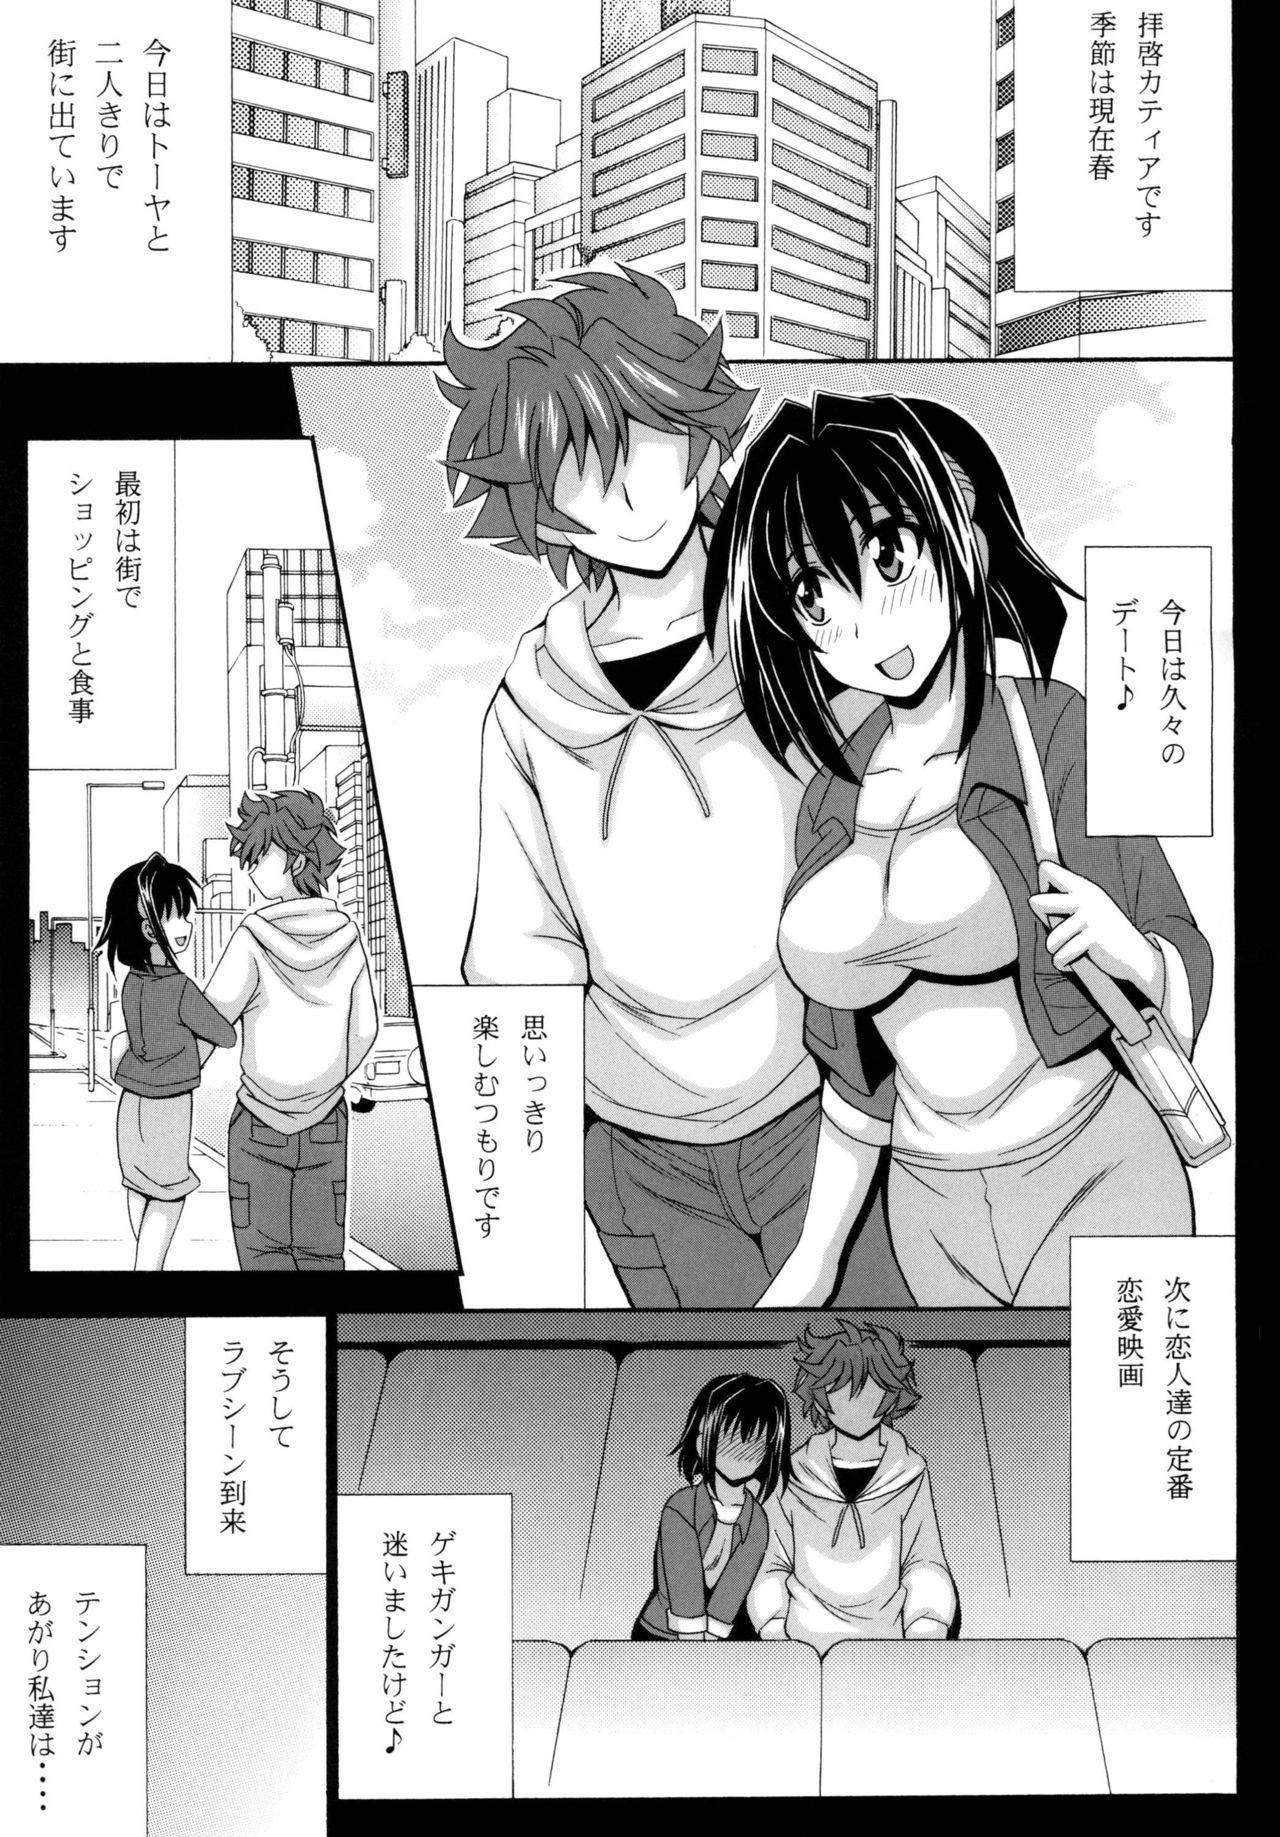 Seduction Kono Yoru o Suberu Mono ni Shukufuku o! 4 - Super robot wars Pica - Page 5